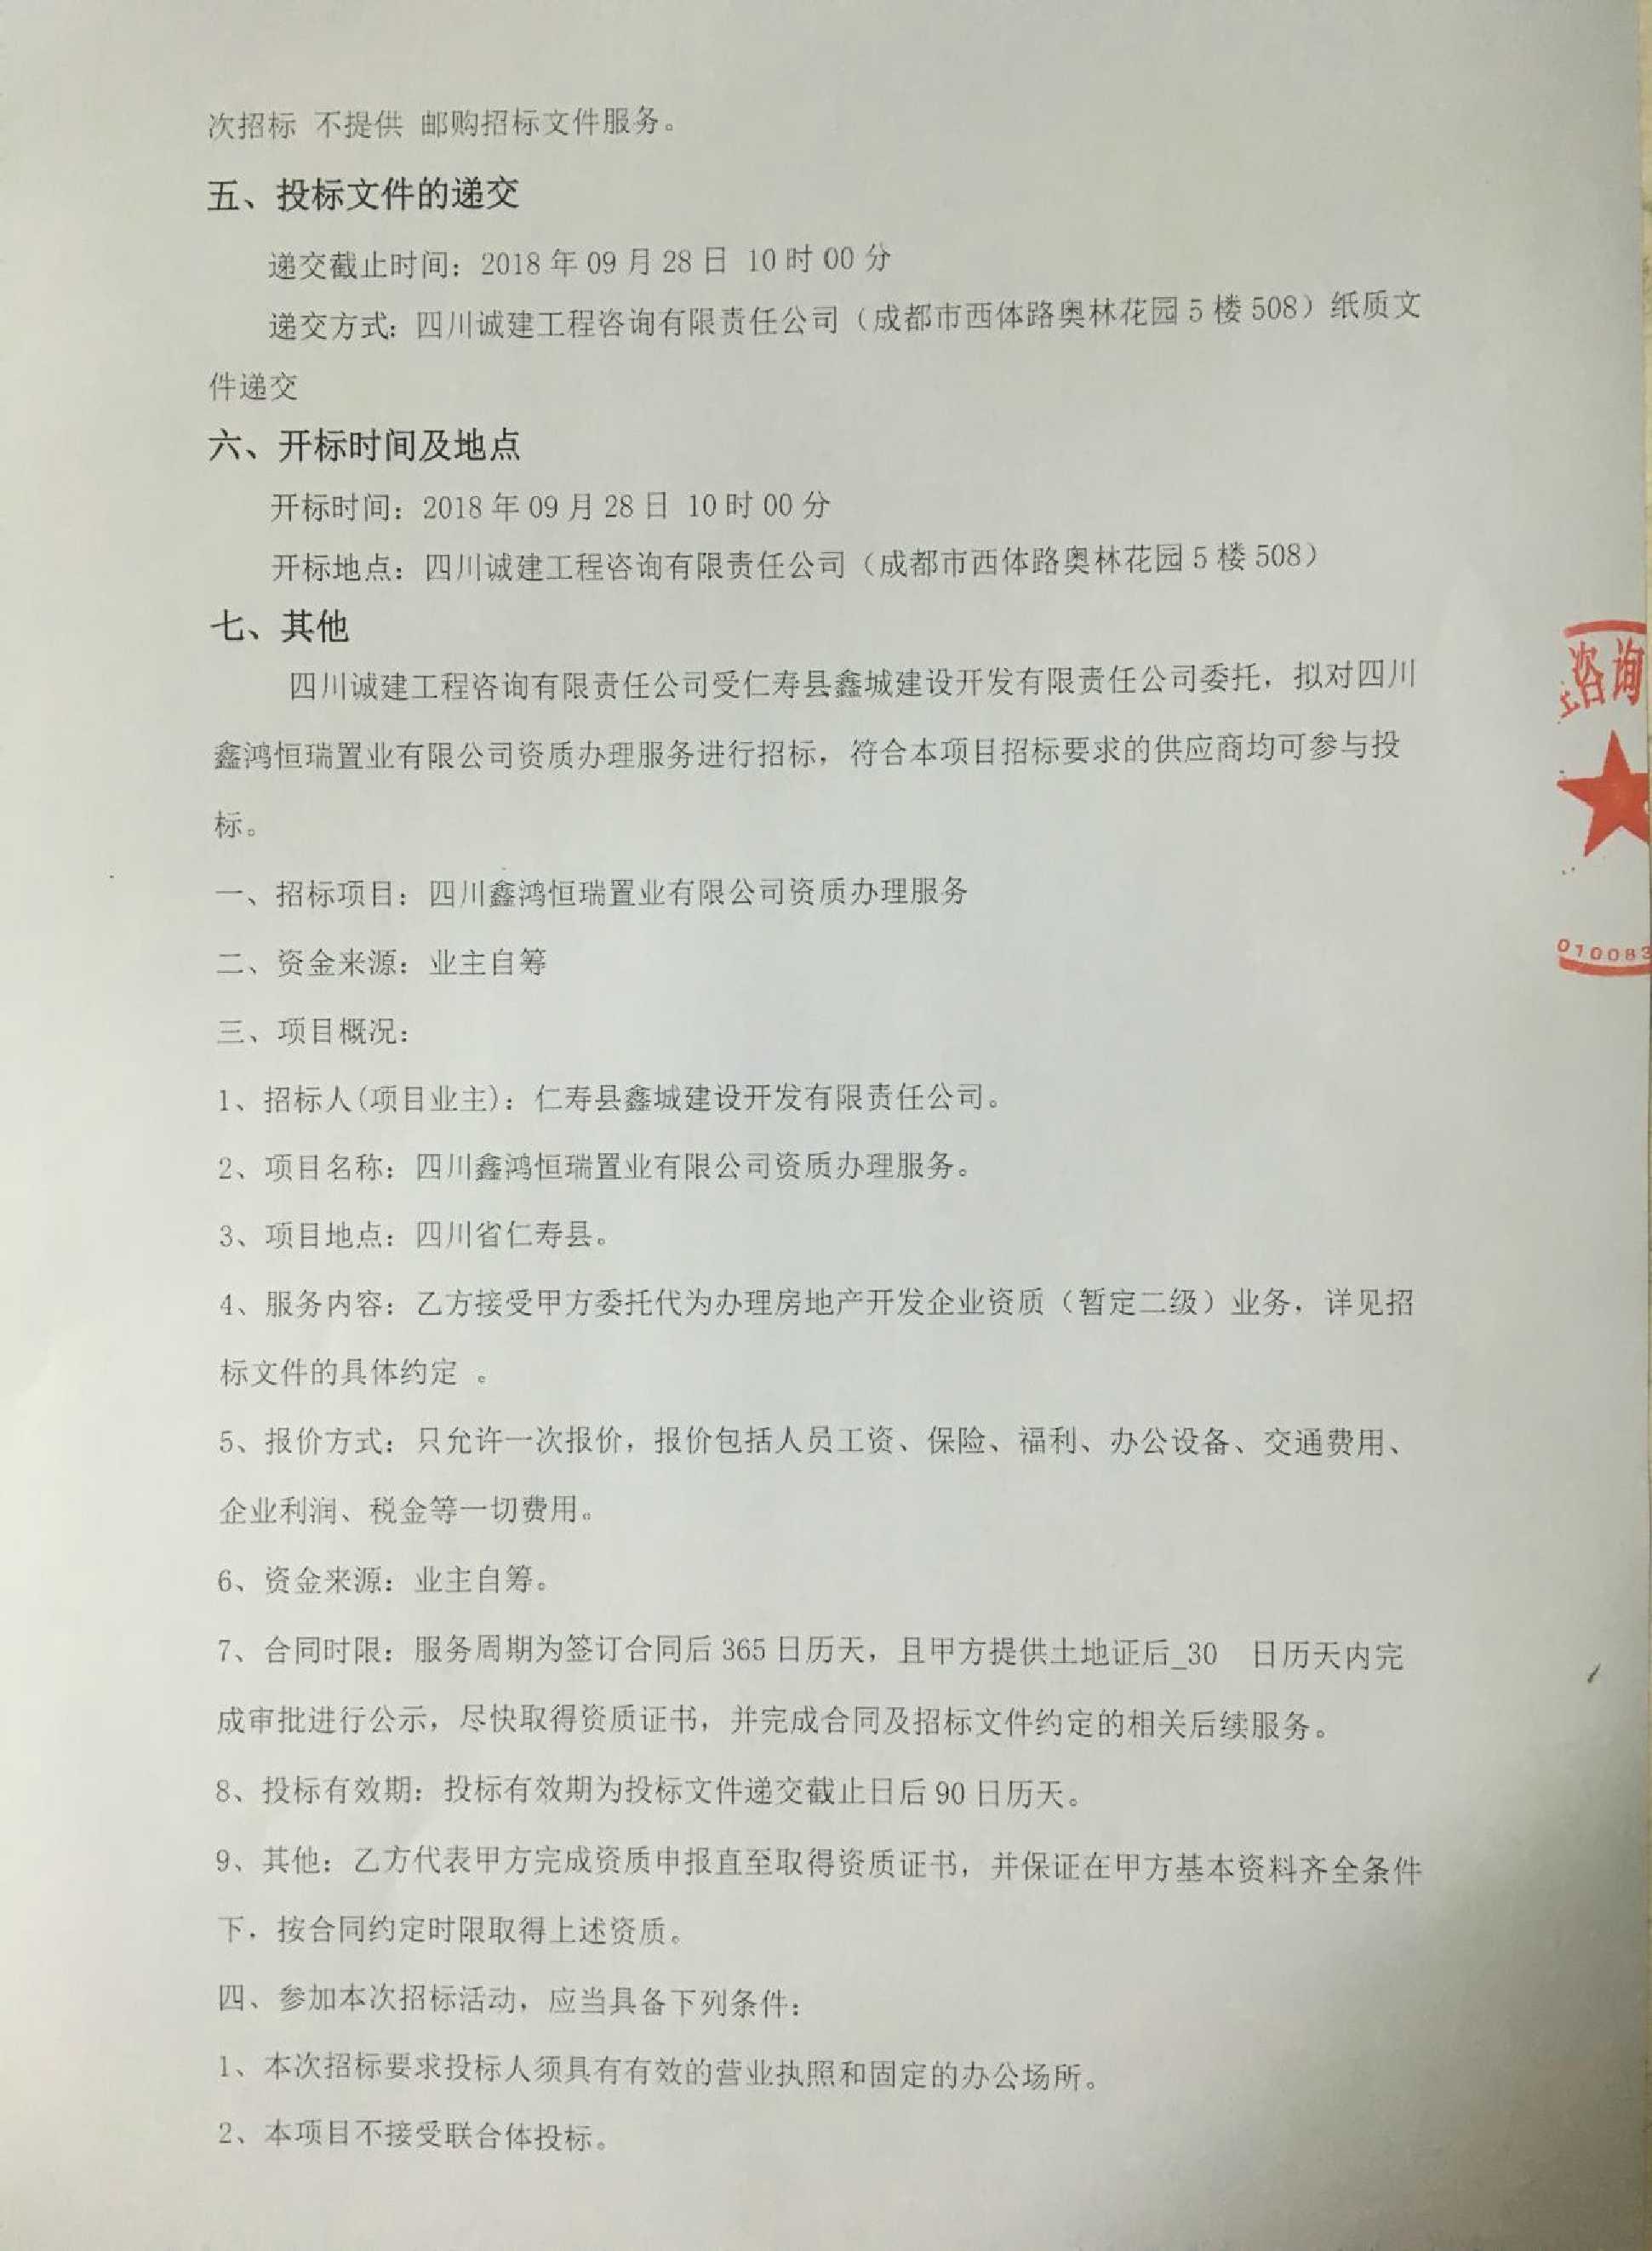 四川鑫鸿恒瑞置业有限公司资质办理服务招标公